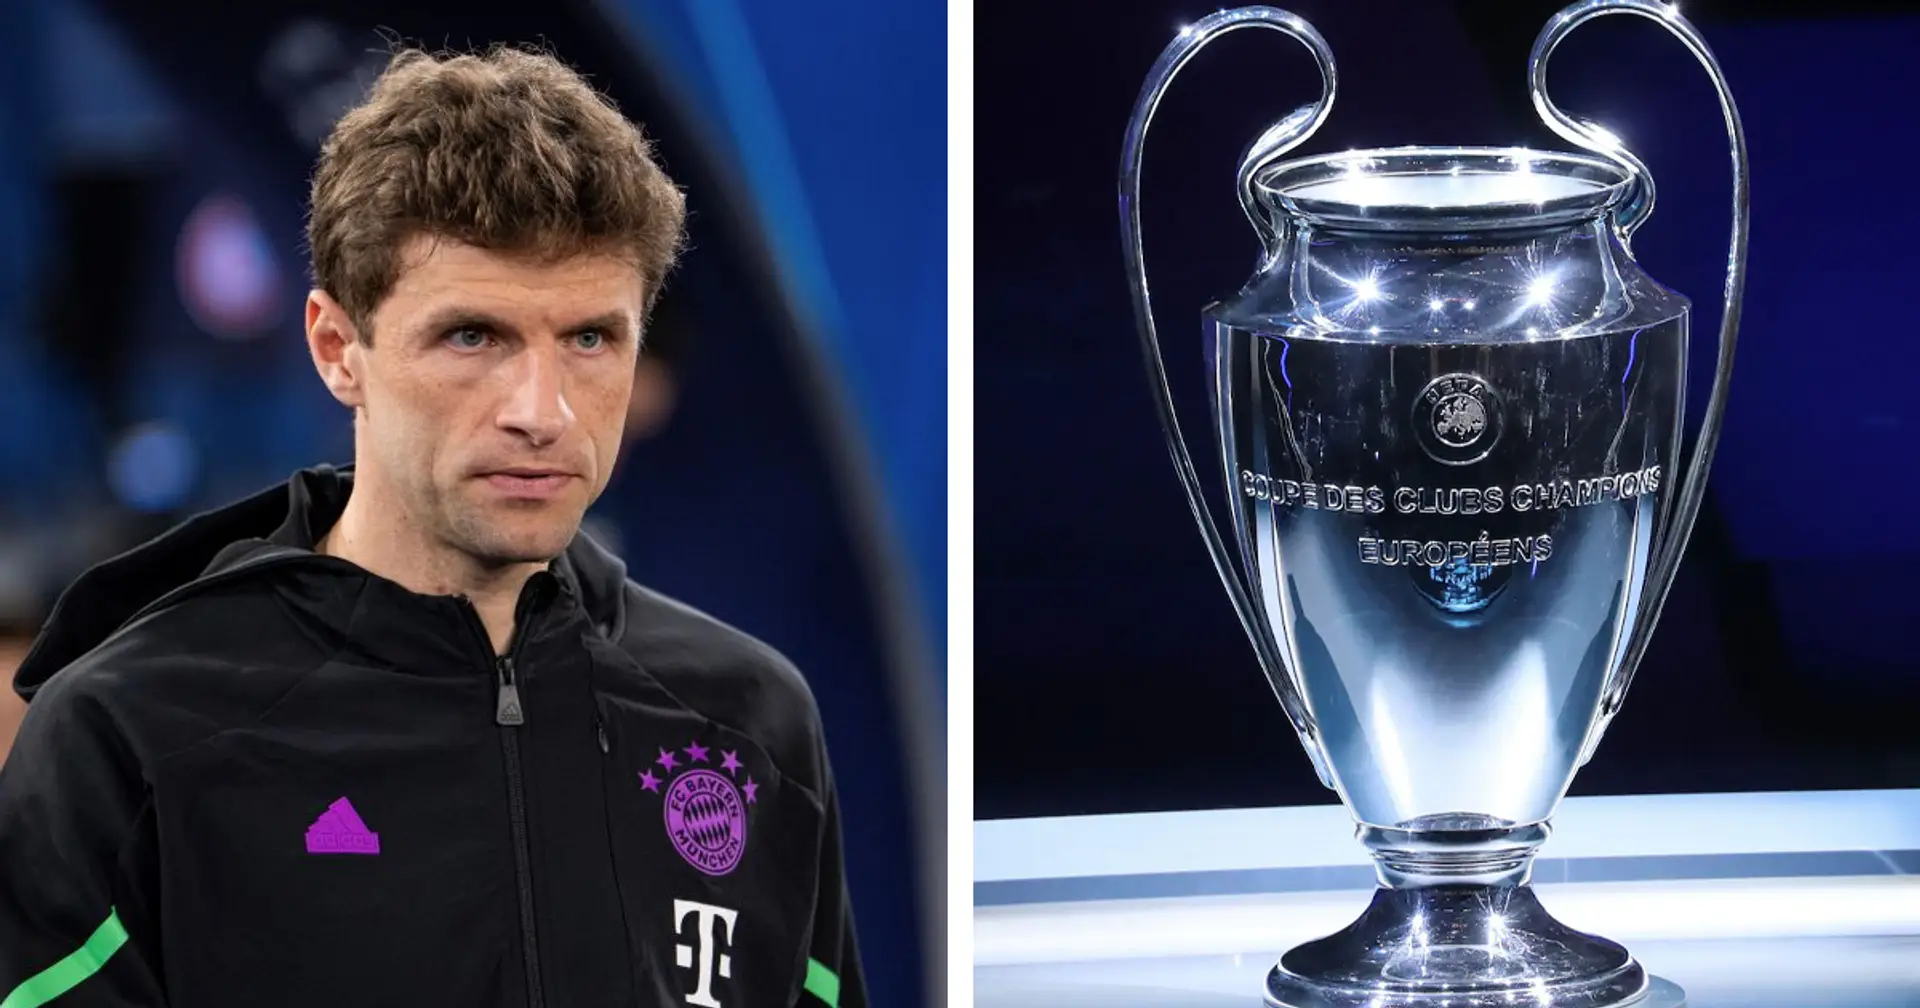 Müller gratuliert Leverkusen, aber bleibt motiviert: "Es geht um die Krone des europäischen Clubfußballs"